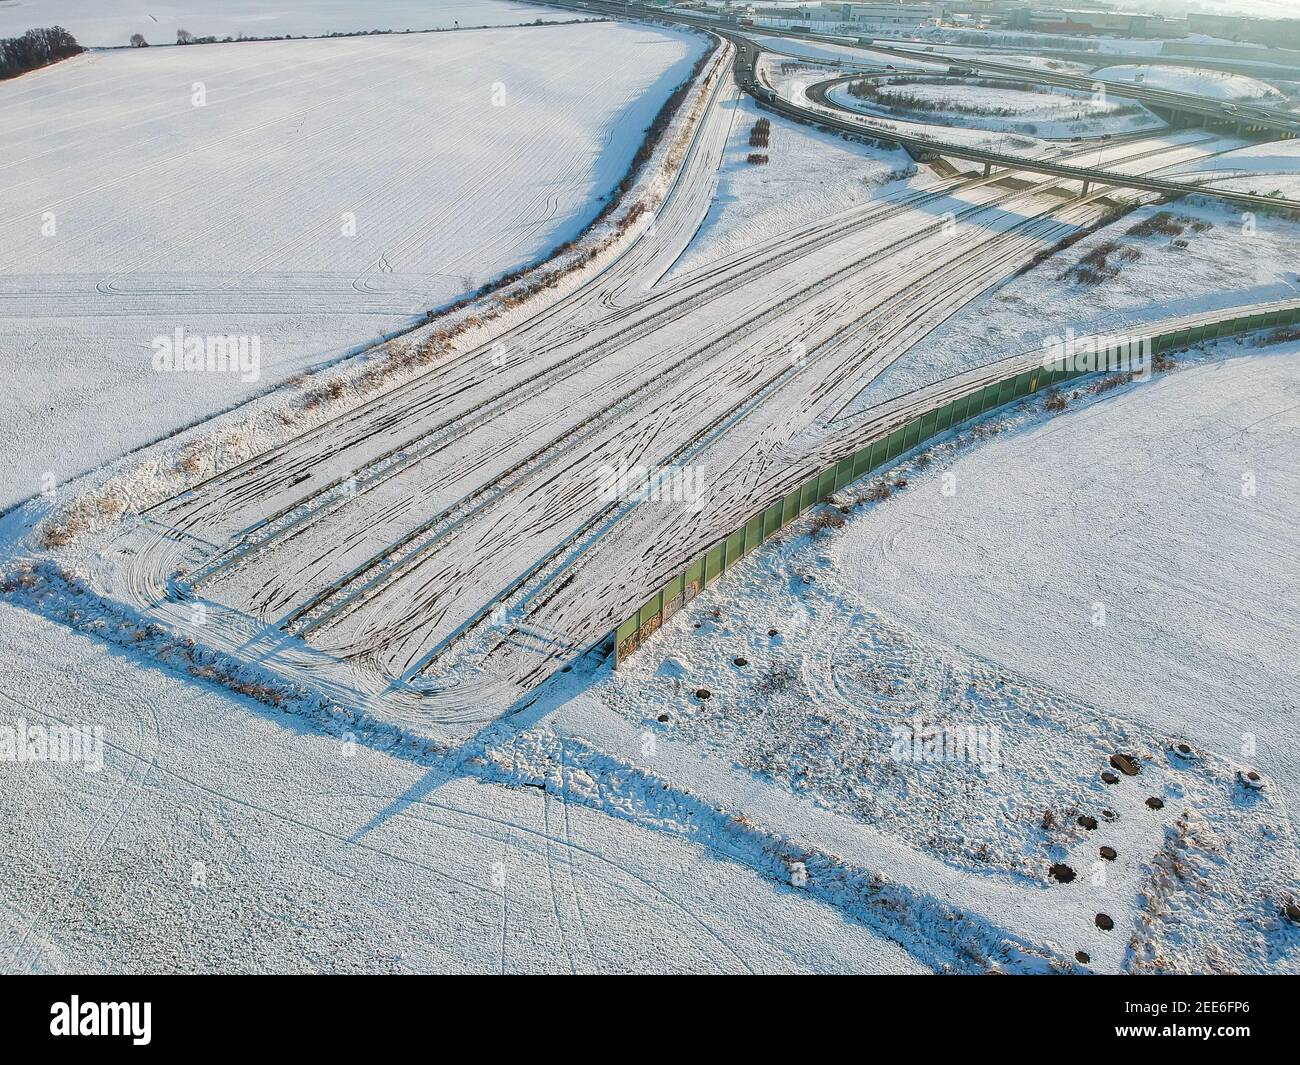 Unvollendete Autobahn D0 (R1) von D1 Autobahn im Winter - Autobahn, die in Feld endet Stockfoto